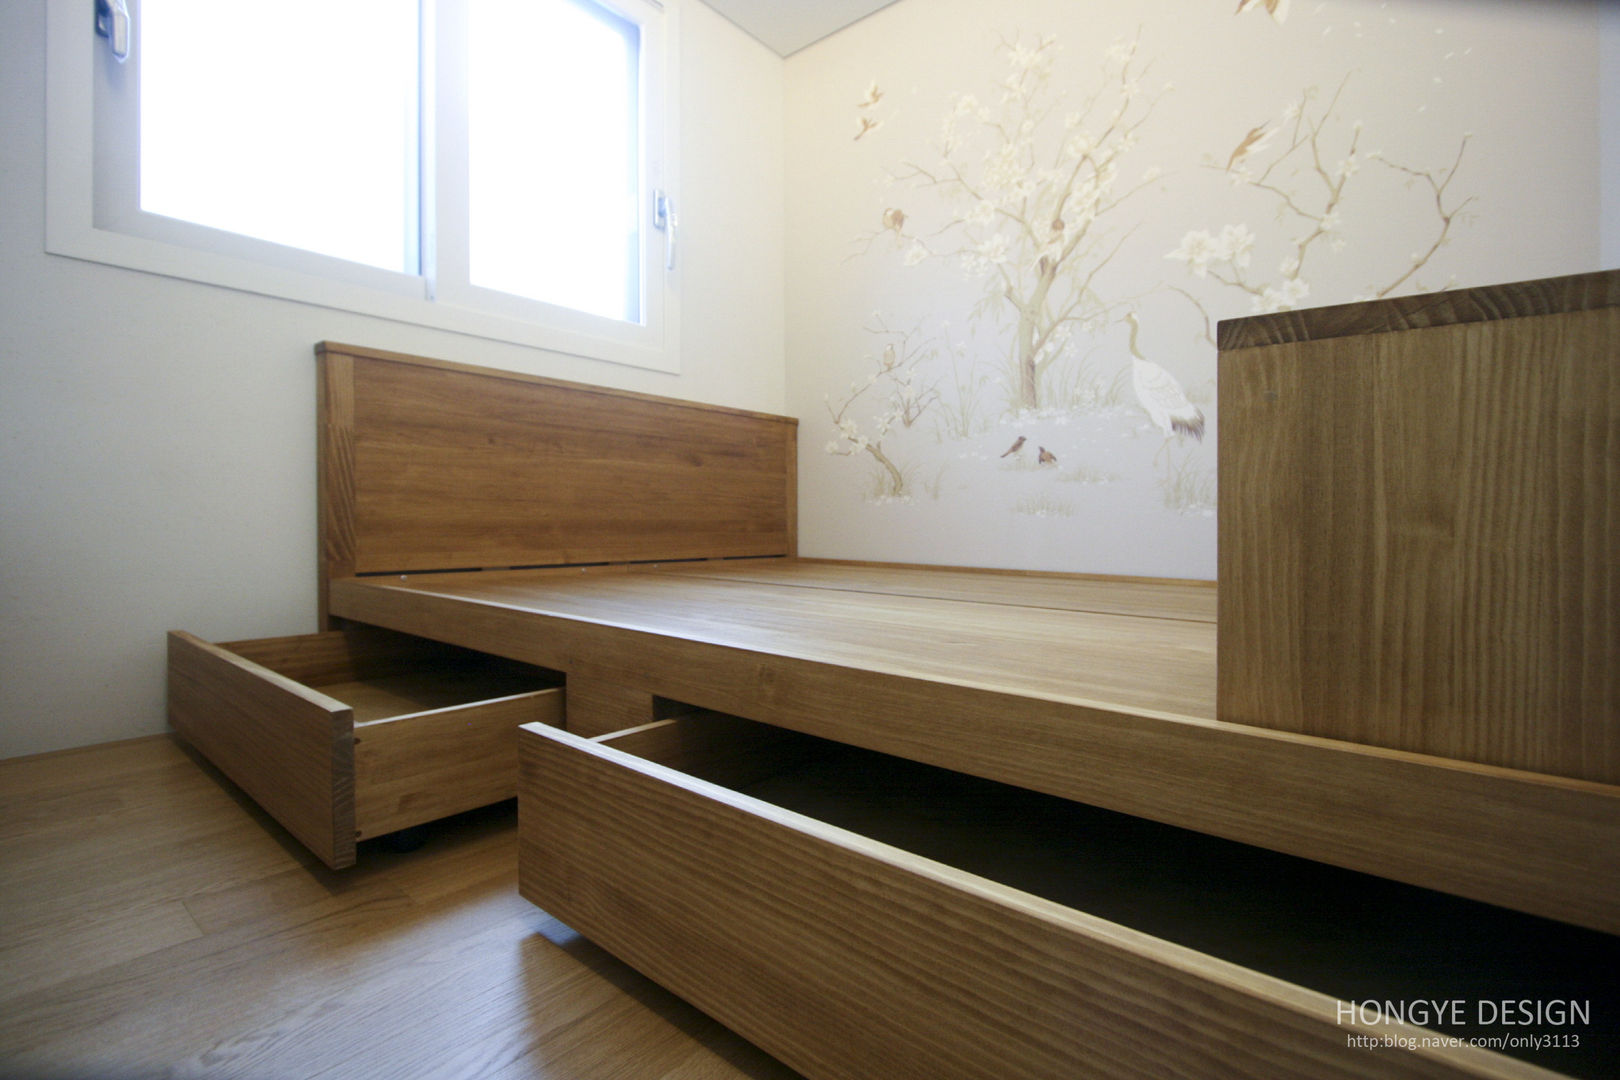 방안에 숨은책방, 작지만 효율적인 주택인테리어_26py, 홍예디자인 홍예디자인 Quartos modernos